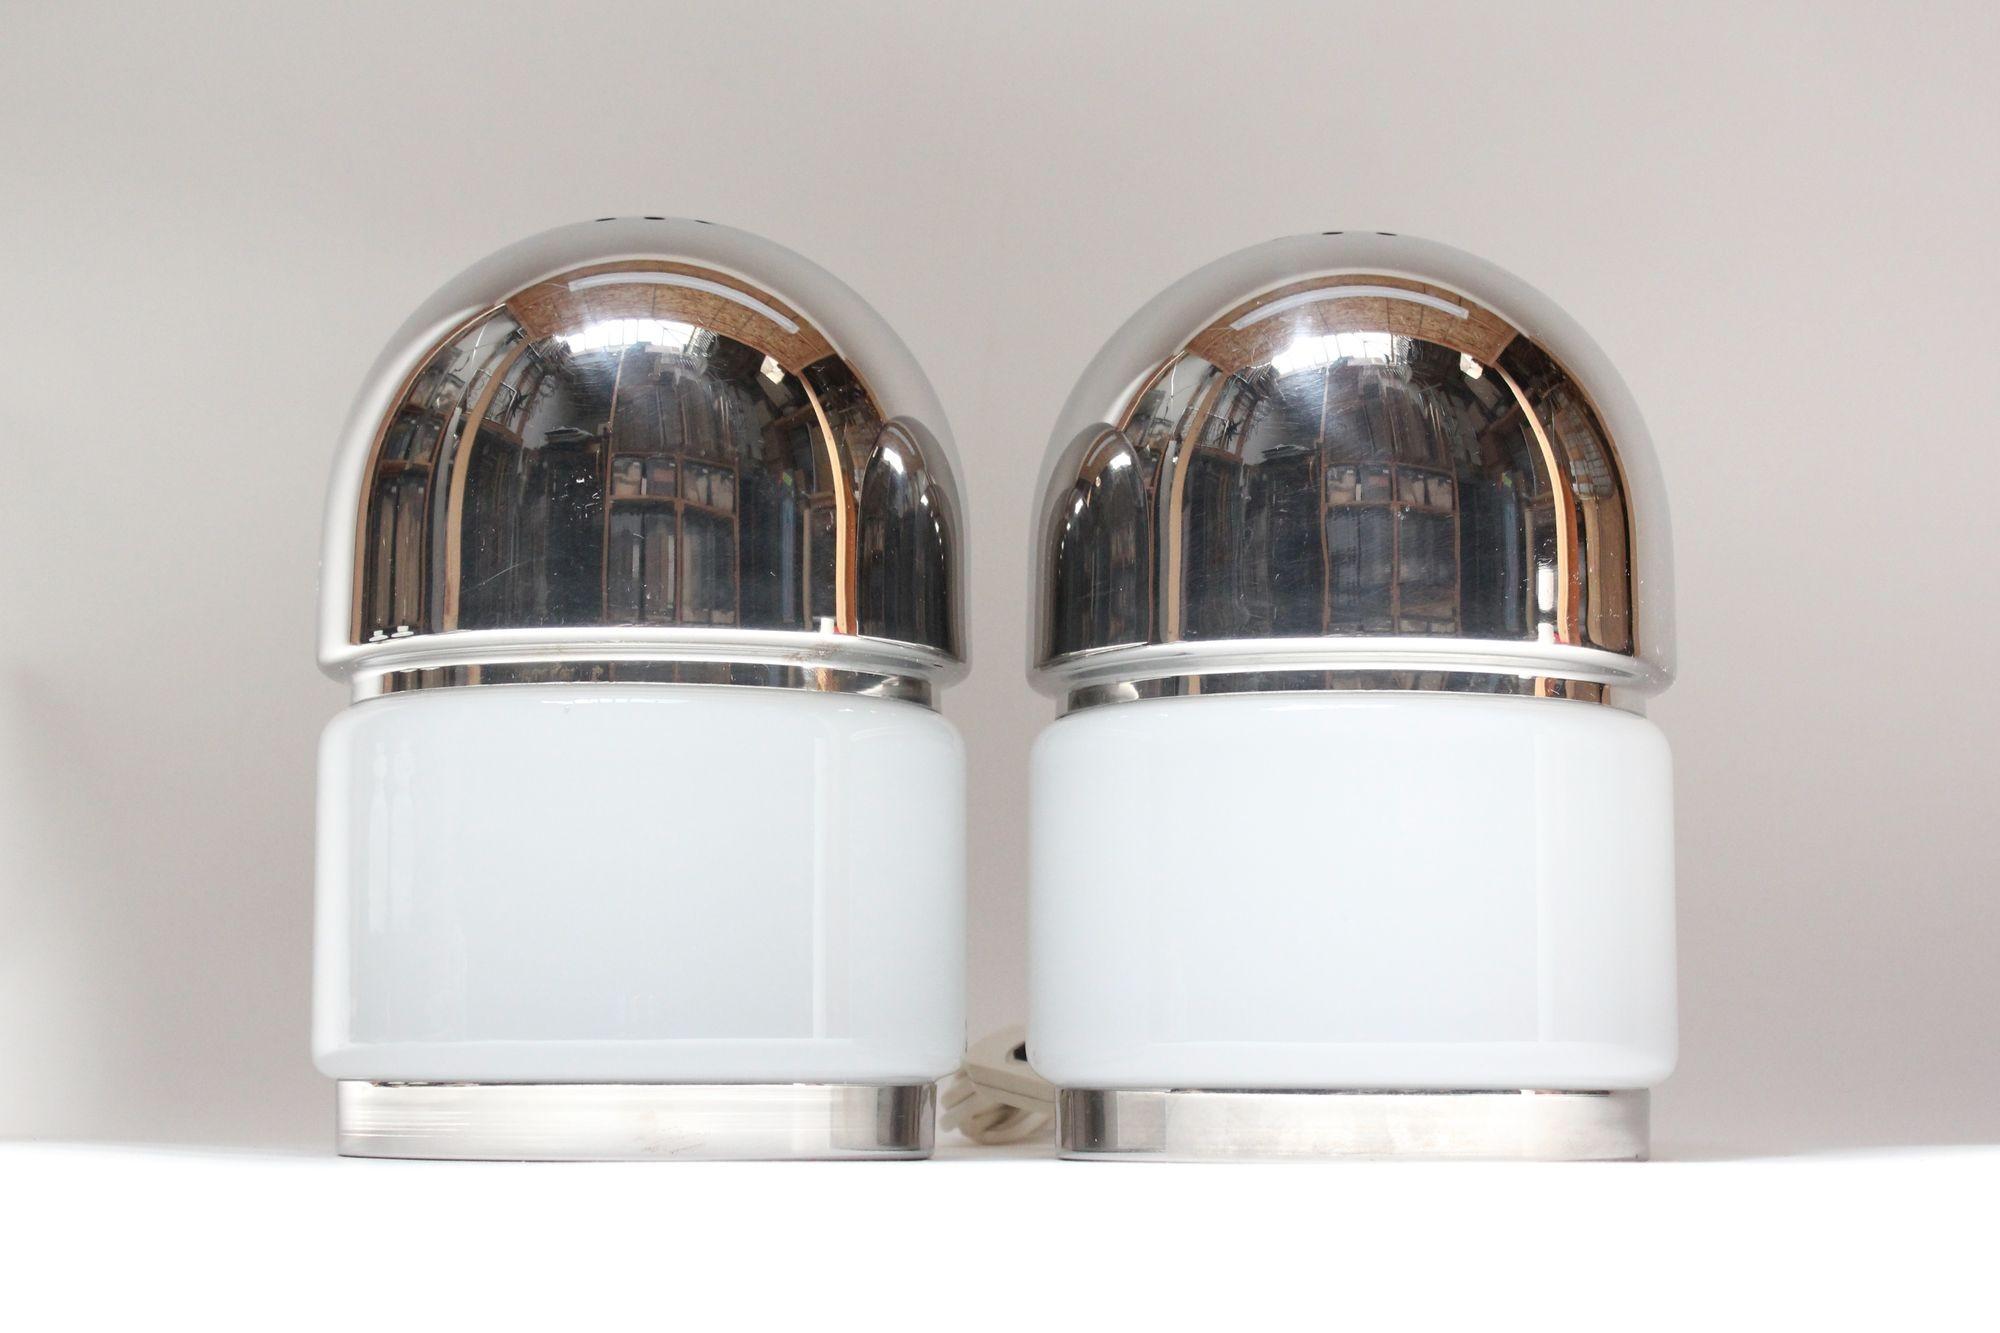 Paire de lampes de table italiennes modernistes en forme de sel et de poivre/capsule conçues vers 1970 par Goffredo Reggiani. Le verre de Murano est soutenu par des bases chromées et des dômes chromés perforés.
Etiquette 